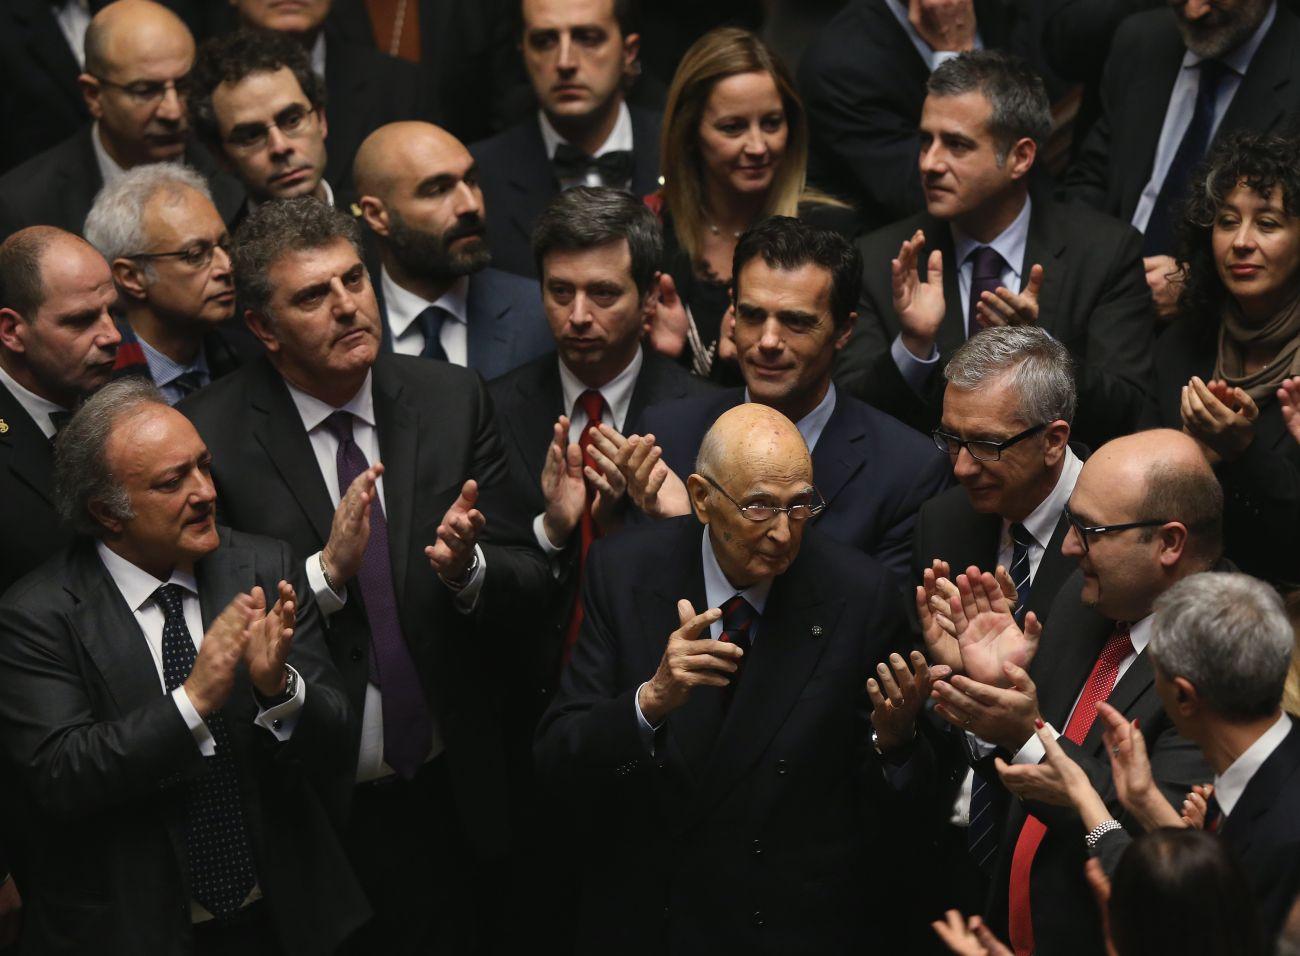 Napolitano és a taps az új elnök megválasztása után